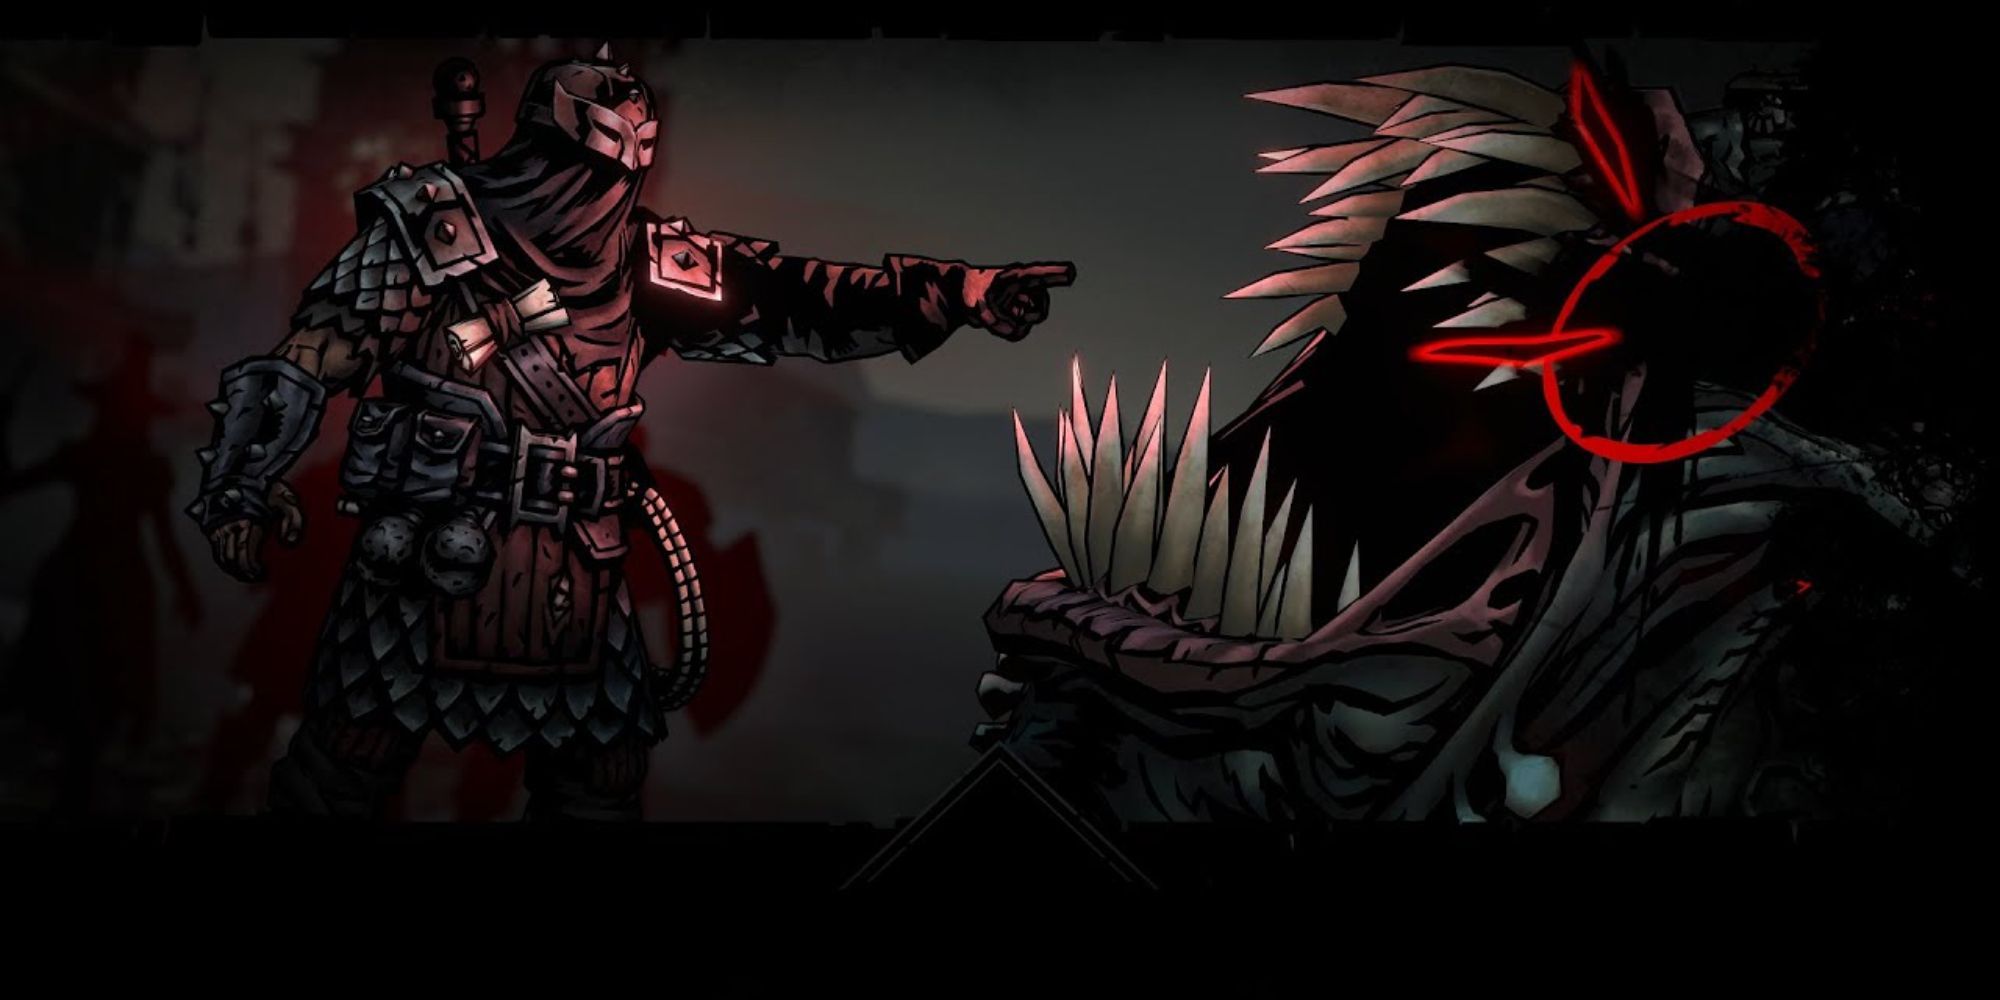 darkest dungeon 2 bounty hunter pointing at monster